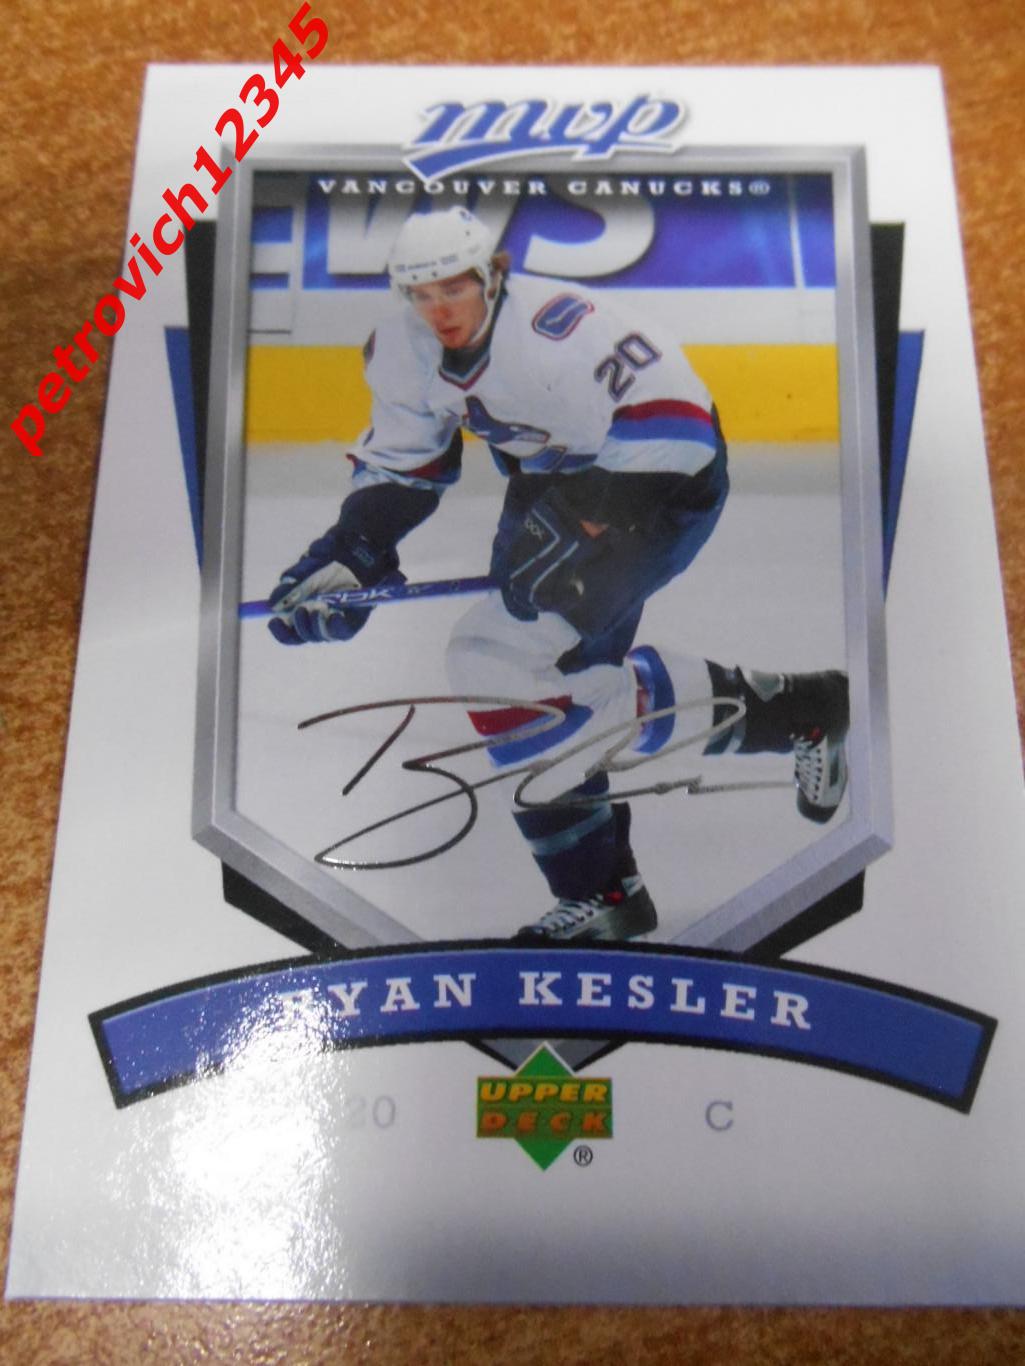 хоккей.карточка - 286 - Ryan Kesler - Vancouver Canucks